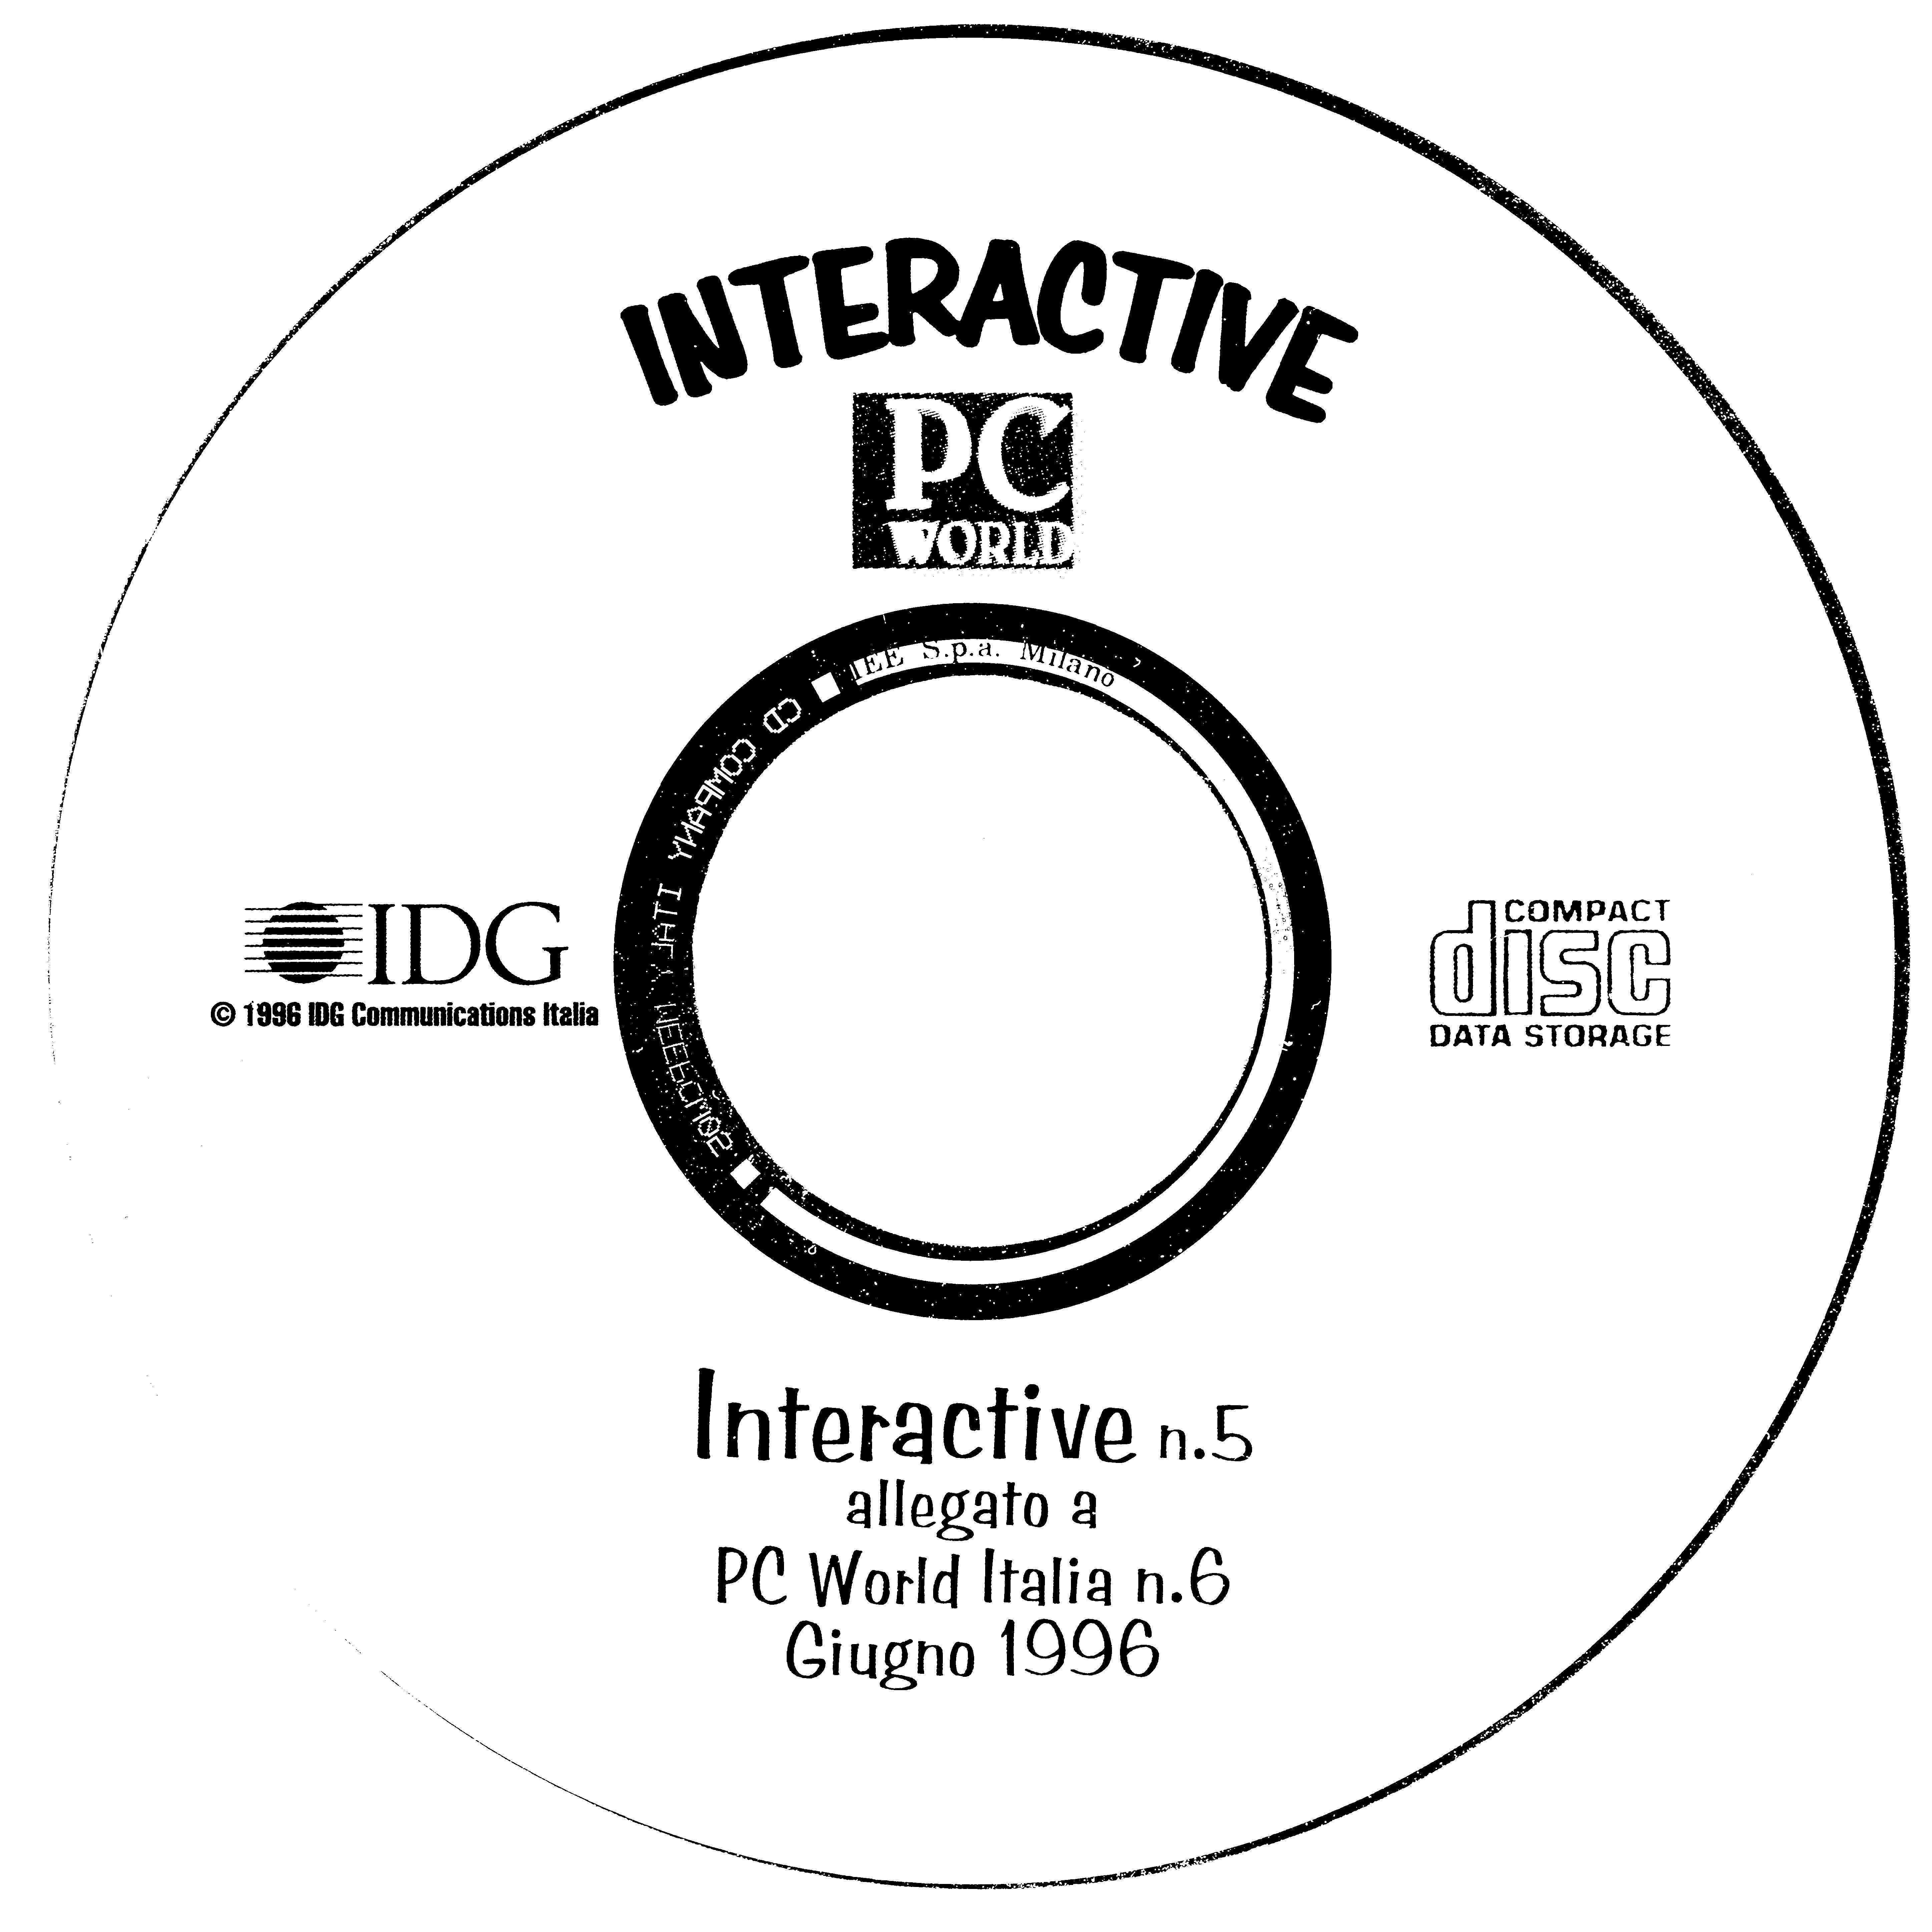 PC World Interactive 5 - Giugno 1996 : IDG Communications Italia 